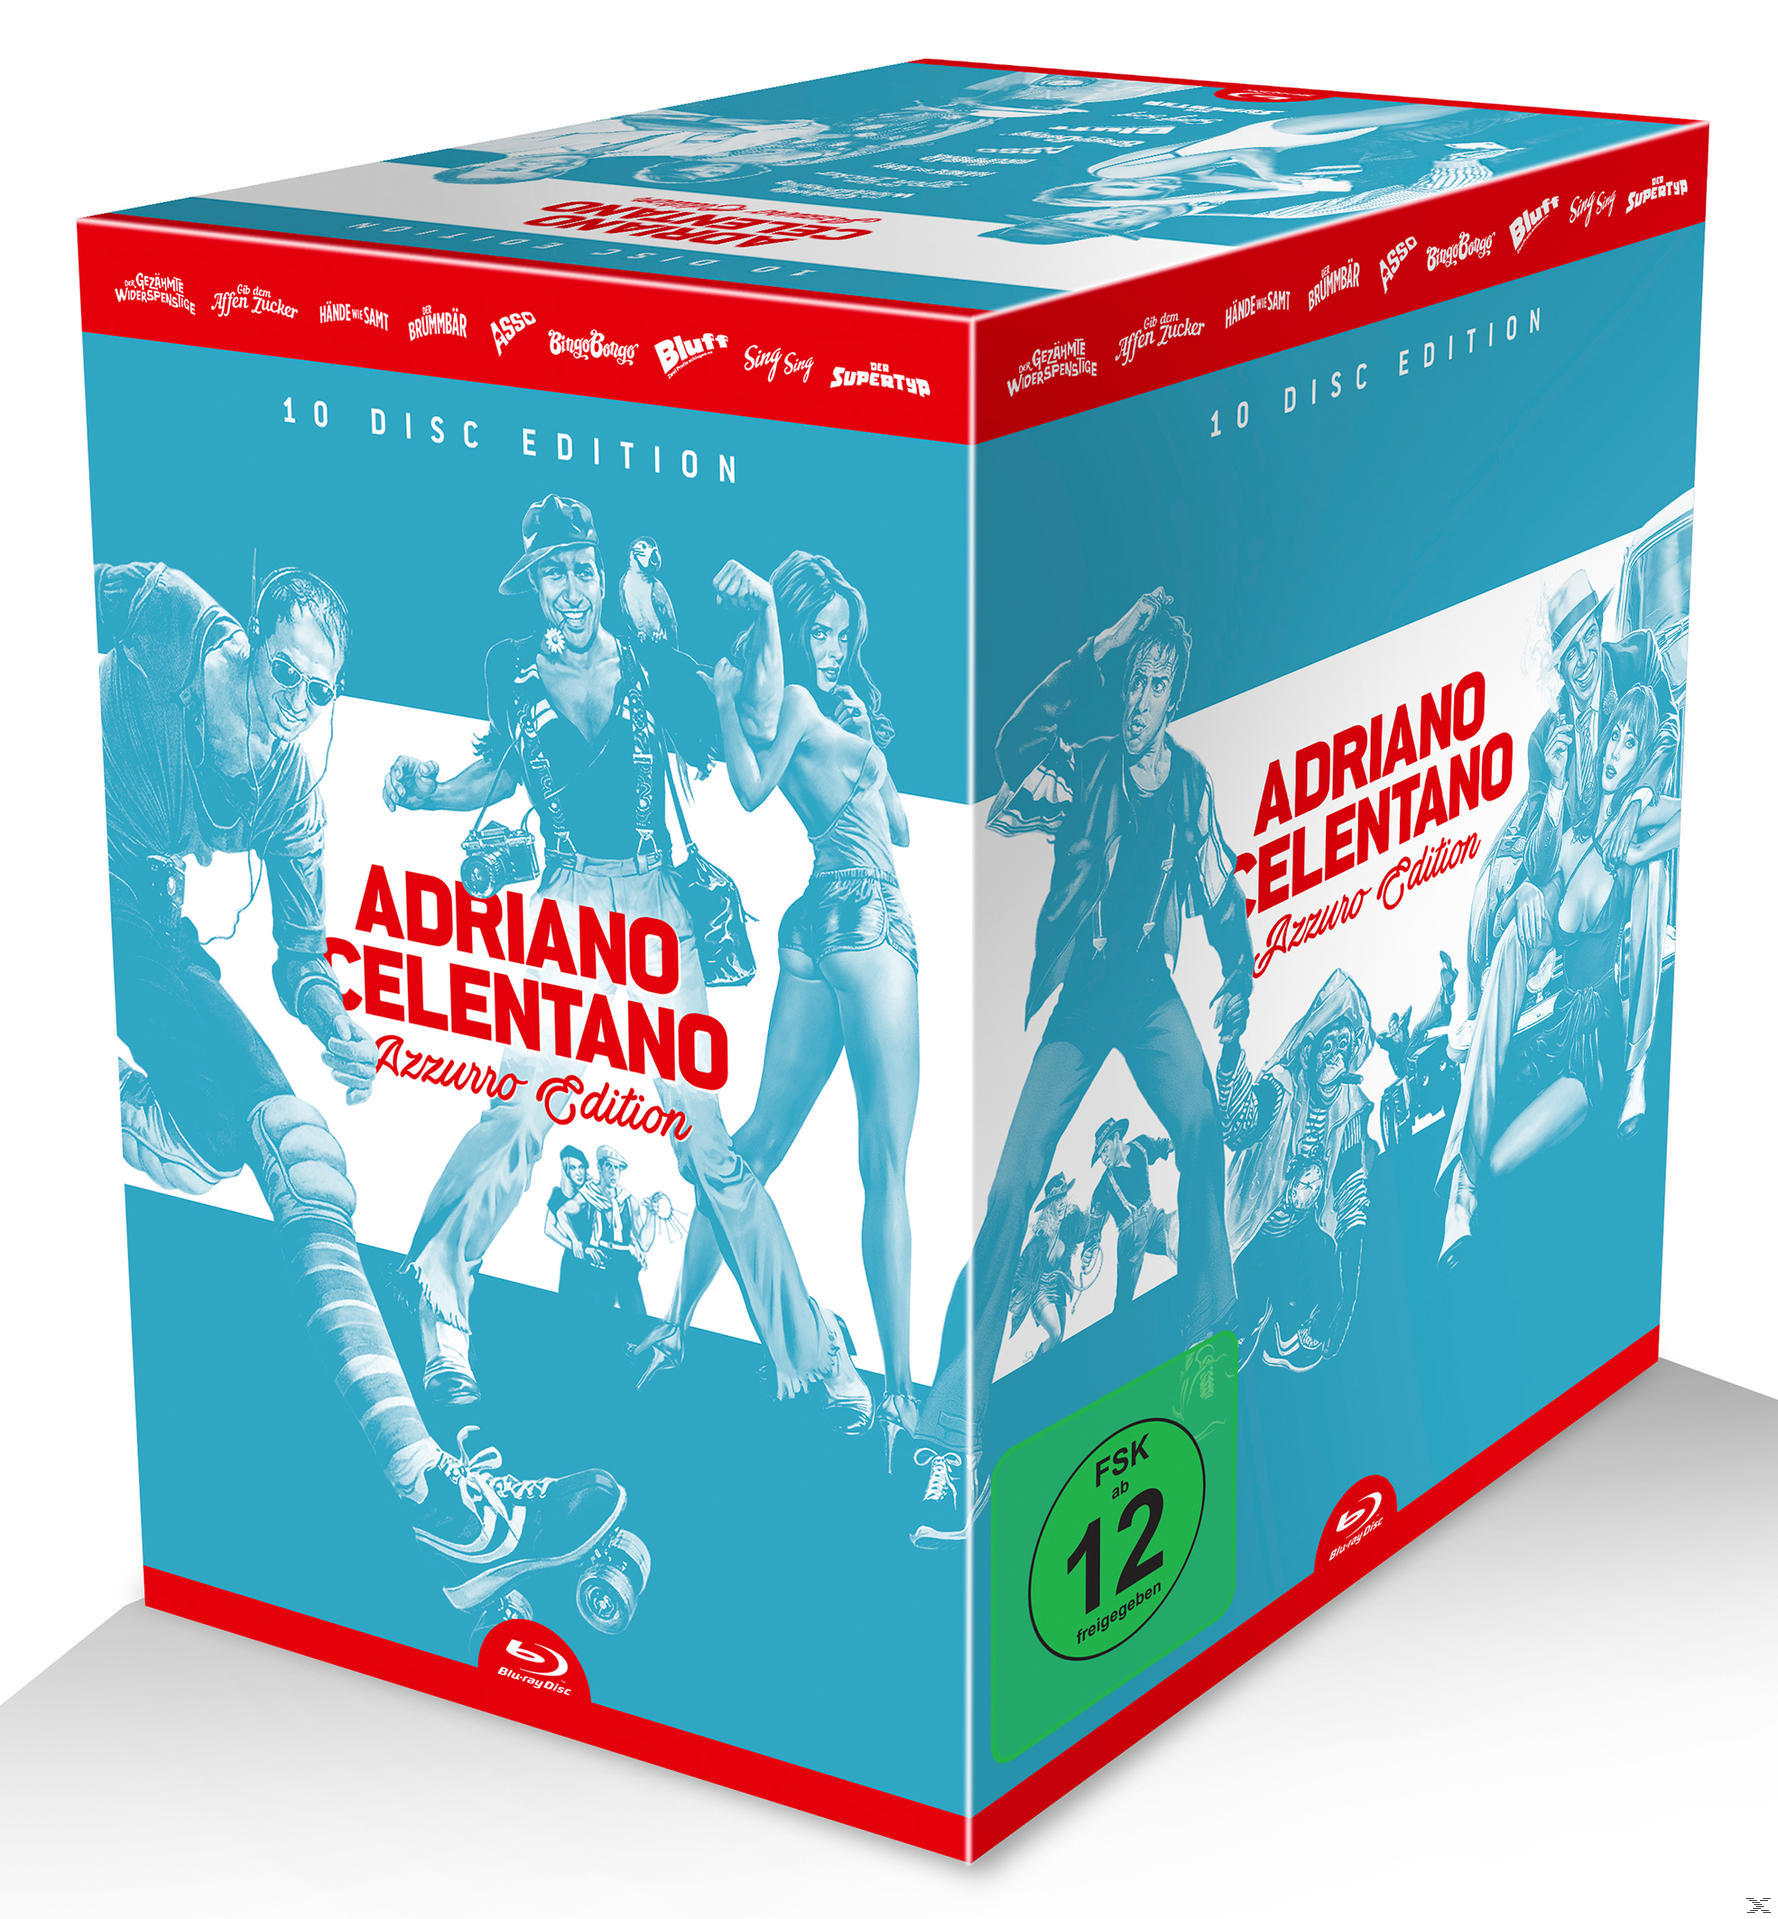 Celentano Azzurro-Edition Adriano Blu-ray